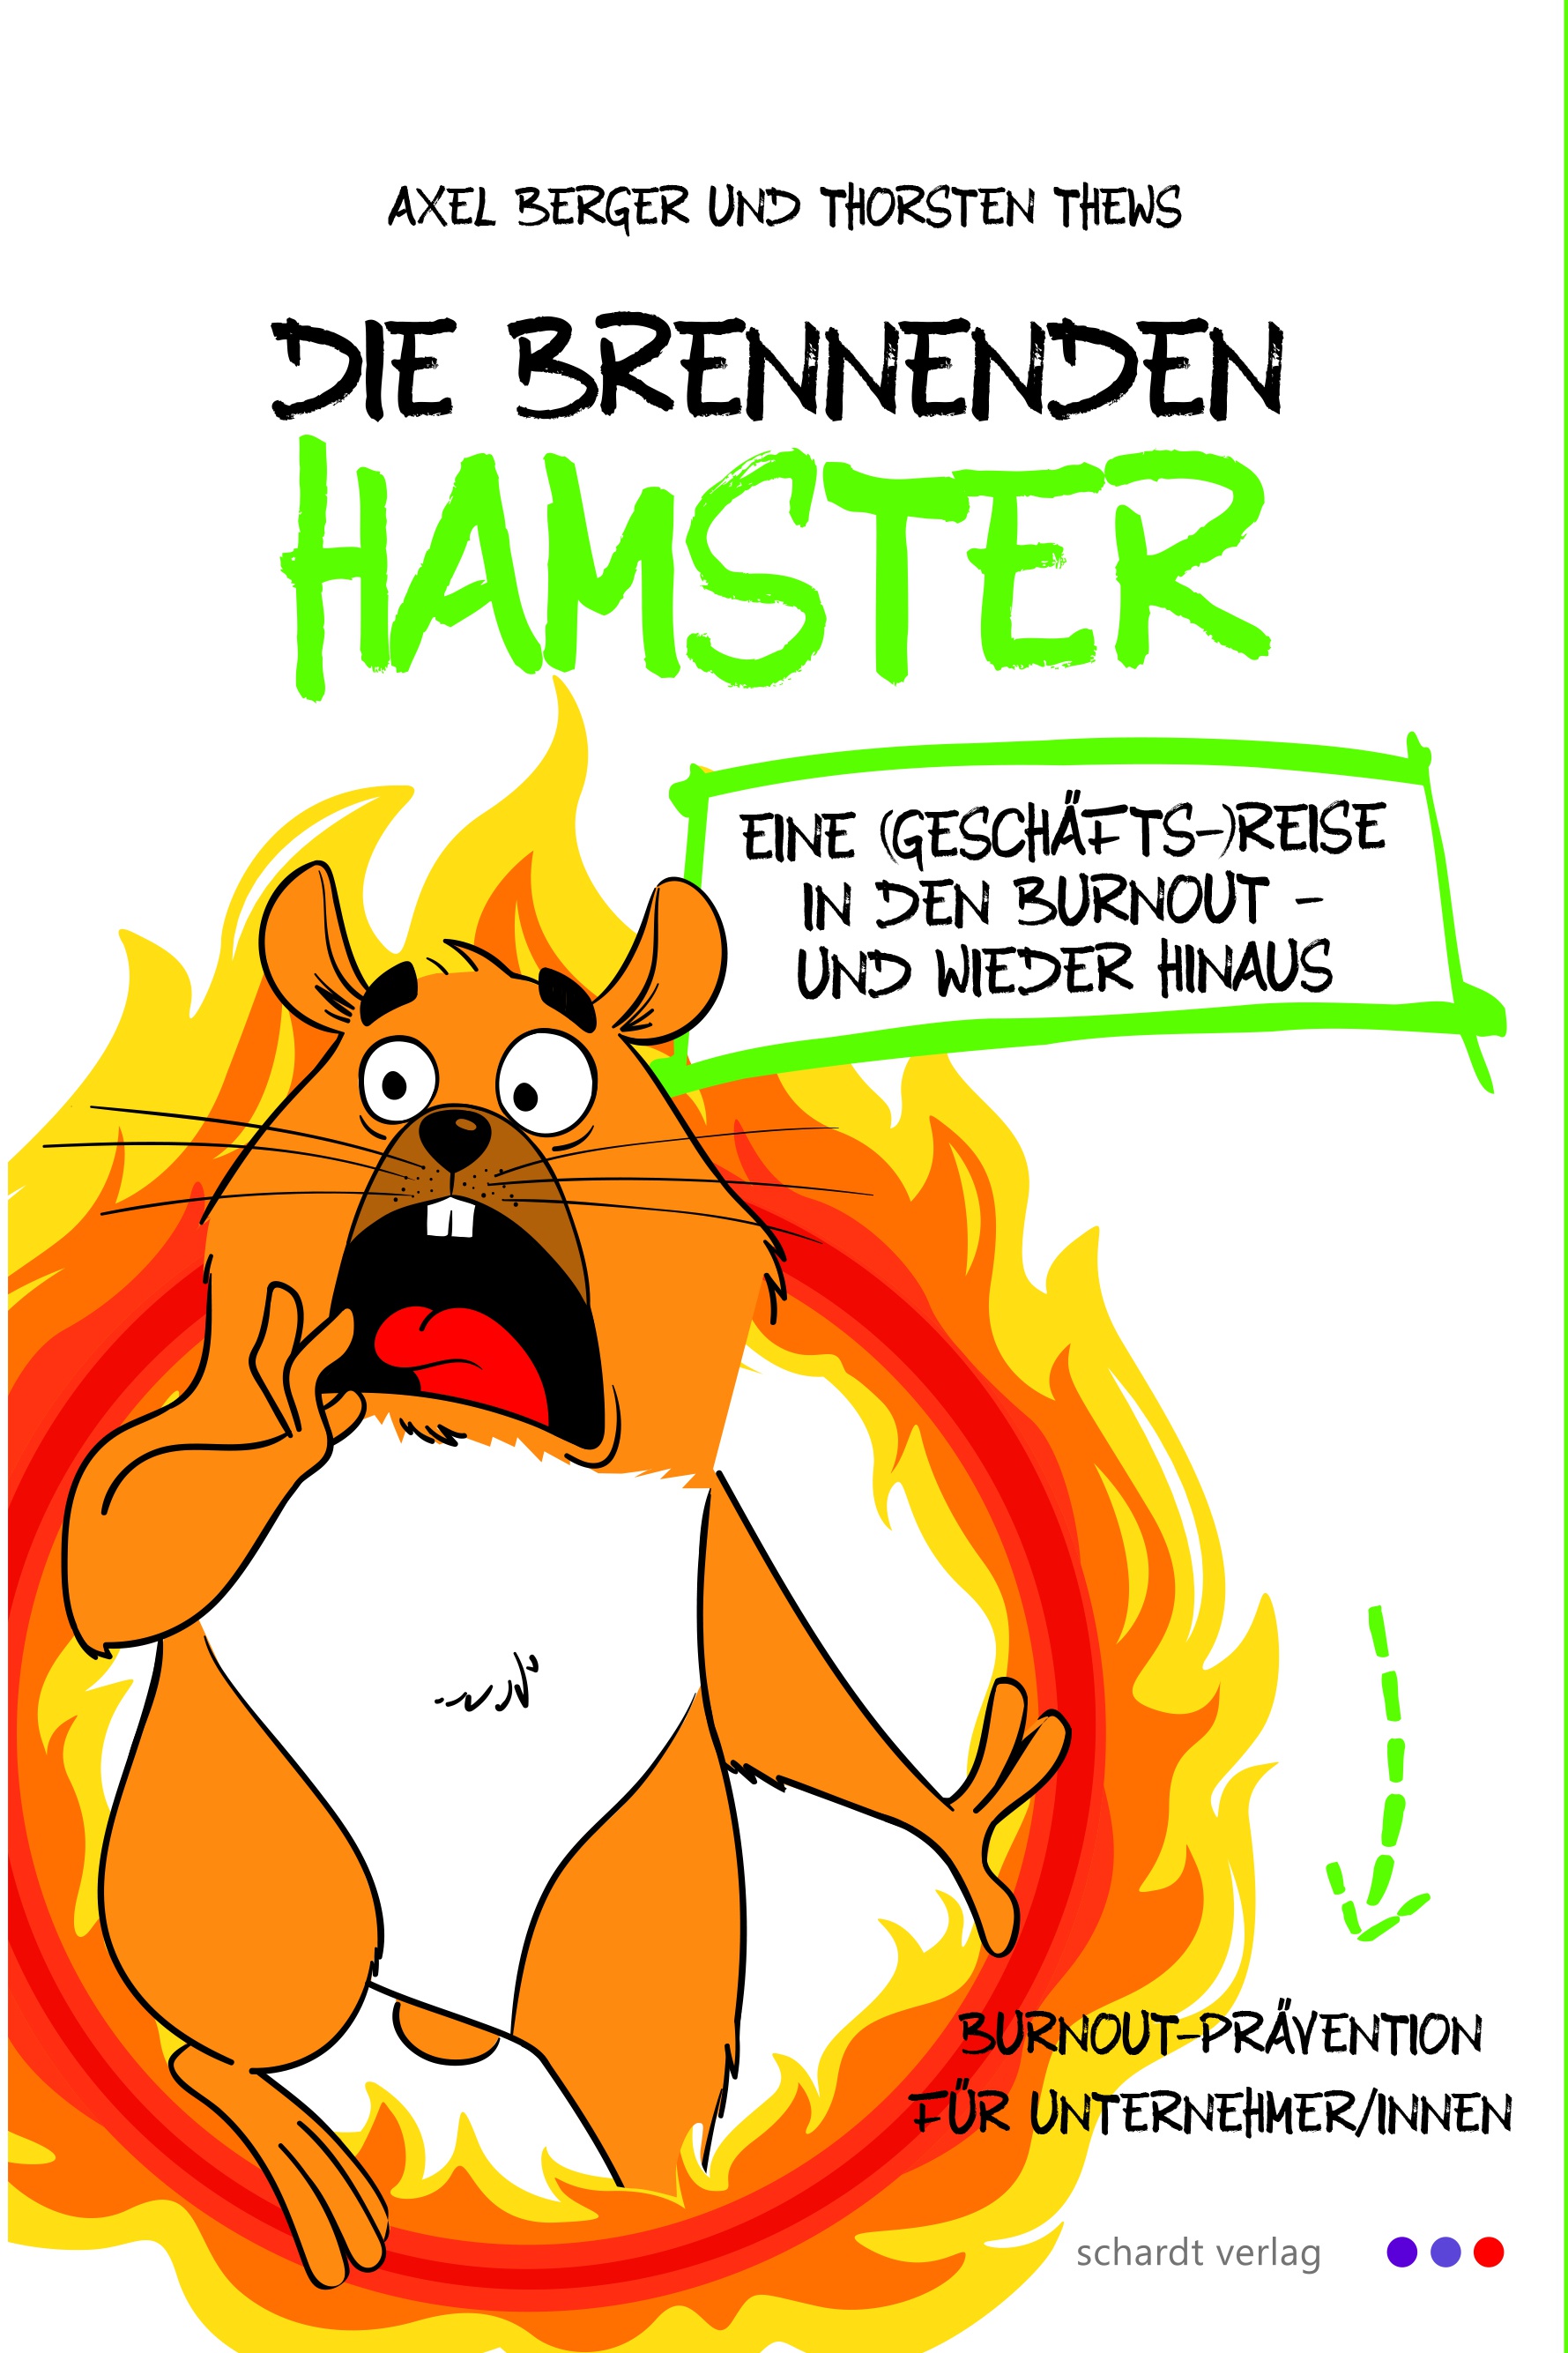 Am Cover des Buches sieht man einen gezeichneten Hamster, der in einem brennenden Rad läuft